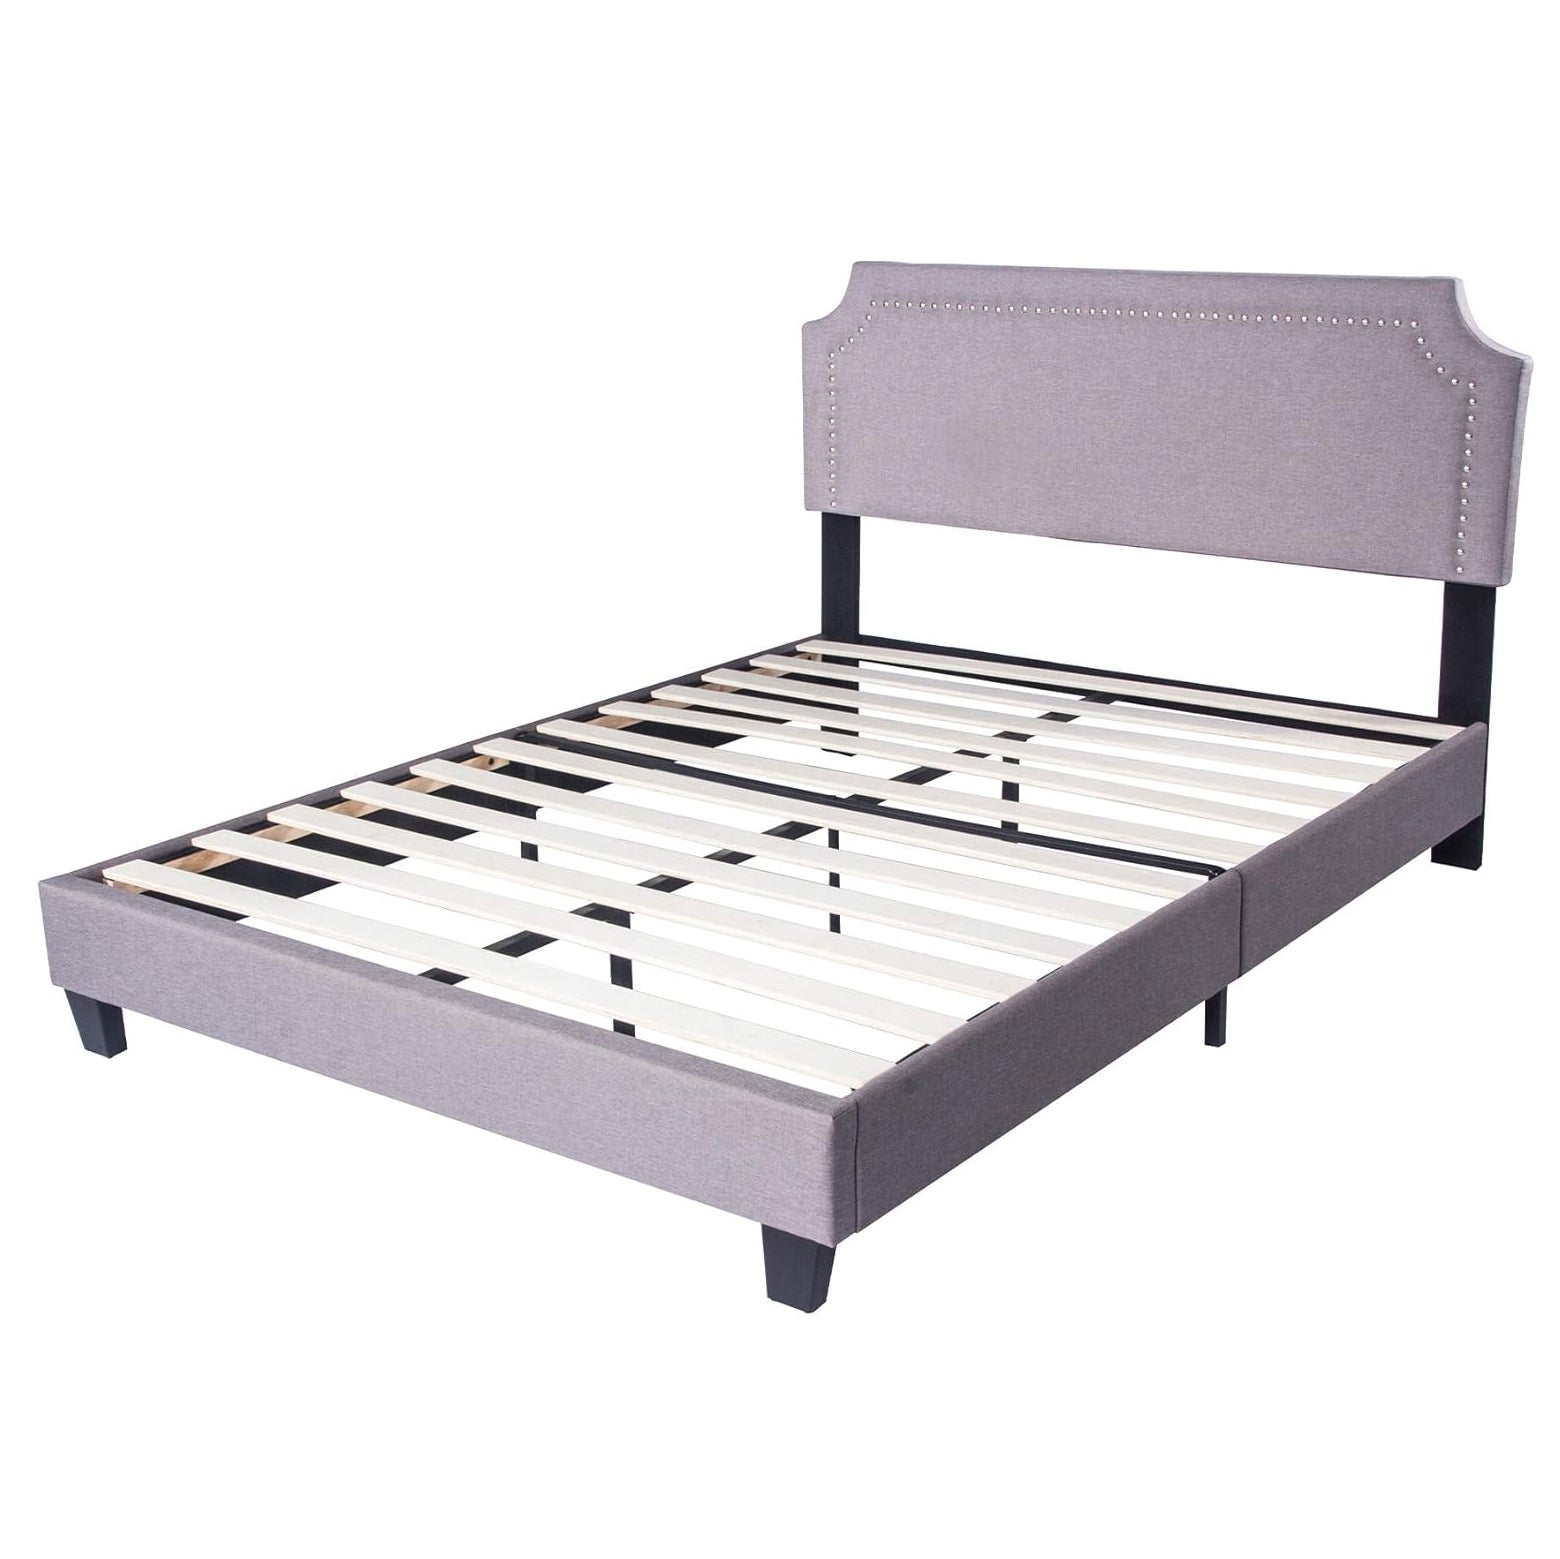 60" Platform Bed Frame Queen Upholstered Headboard Wood Slat Support Metal Frame Heavy Duty Bed Frame for Bedroom